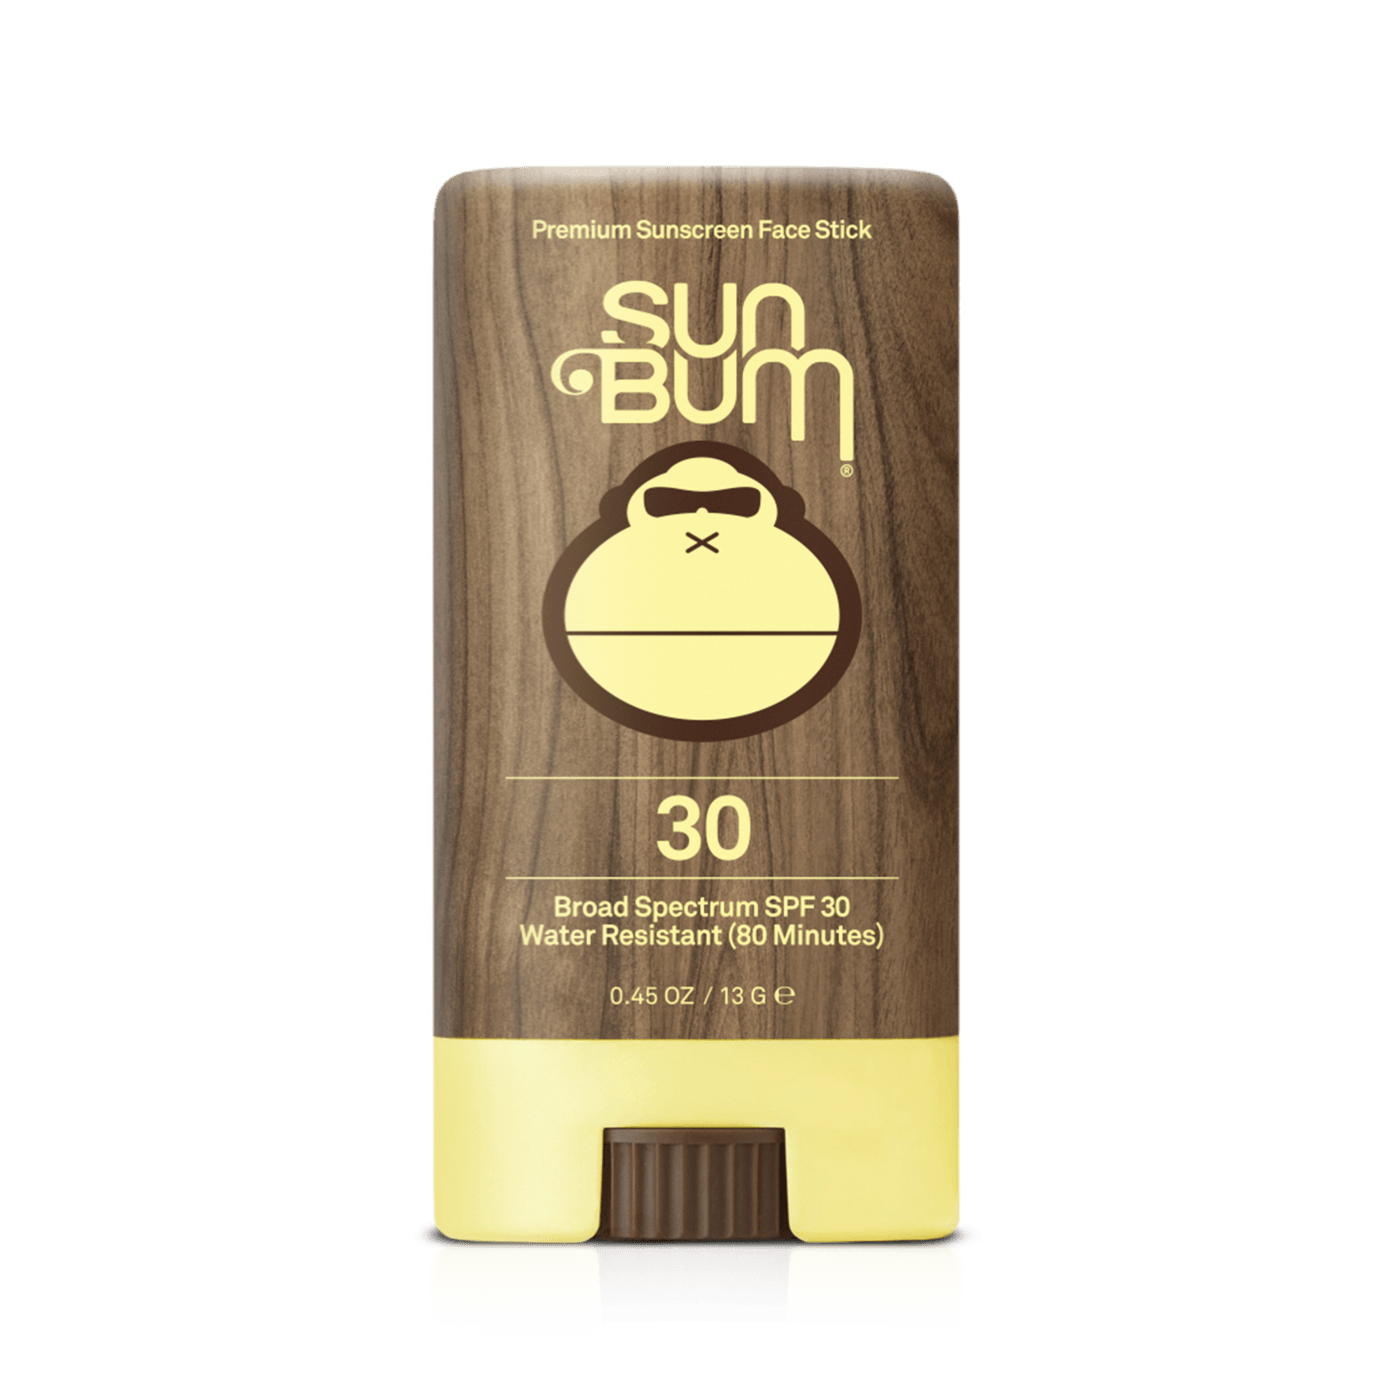 SUN BUM Original SPF 30 Sunscreen Face Stick ACCESSORIES - Sunscreen Sun Bum 